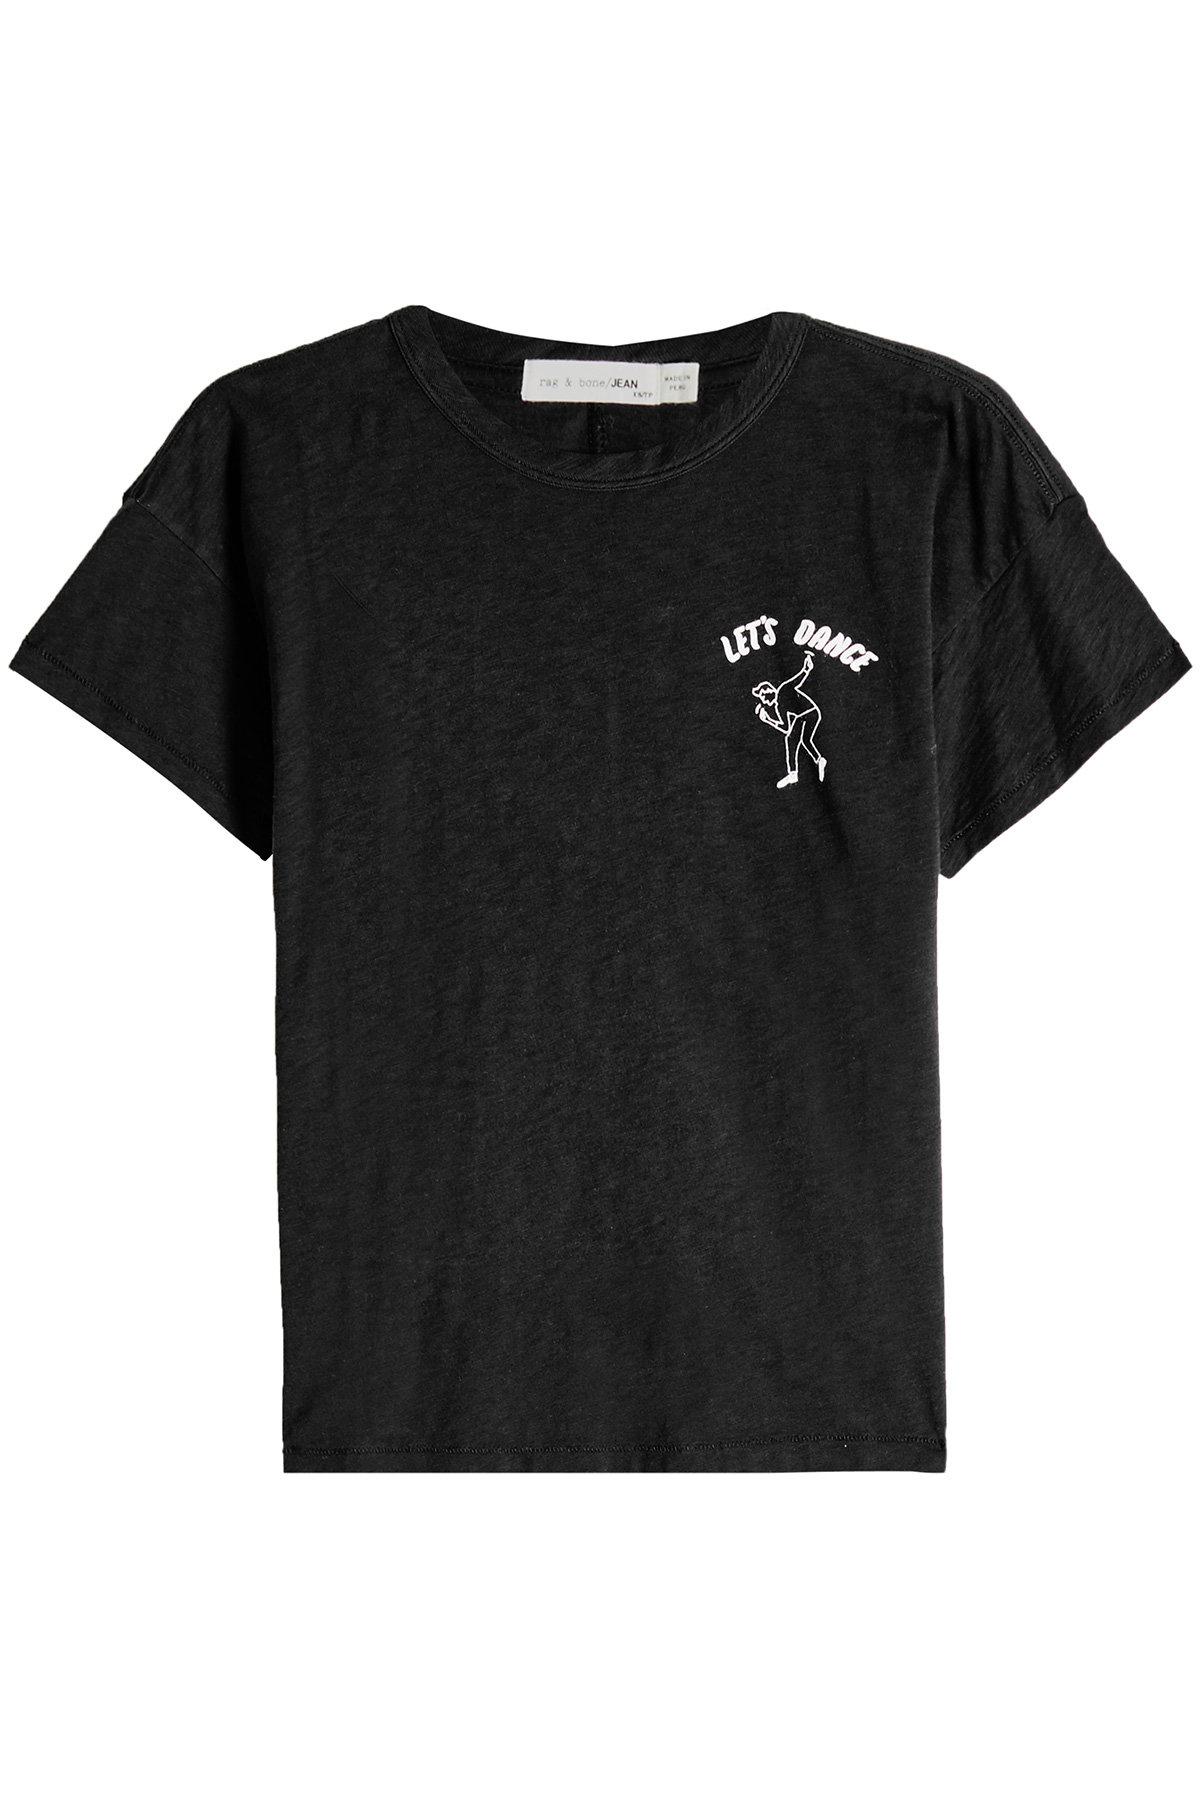 Rag & Bone - Let's Dance Cotton T-Shirt